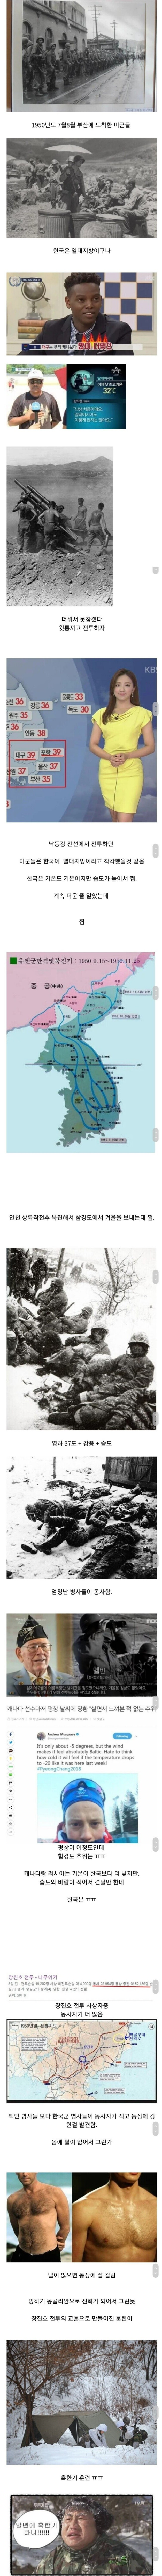 한국전쟁 당시 미군들을 당황시킨 것